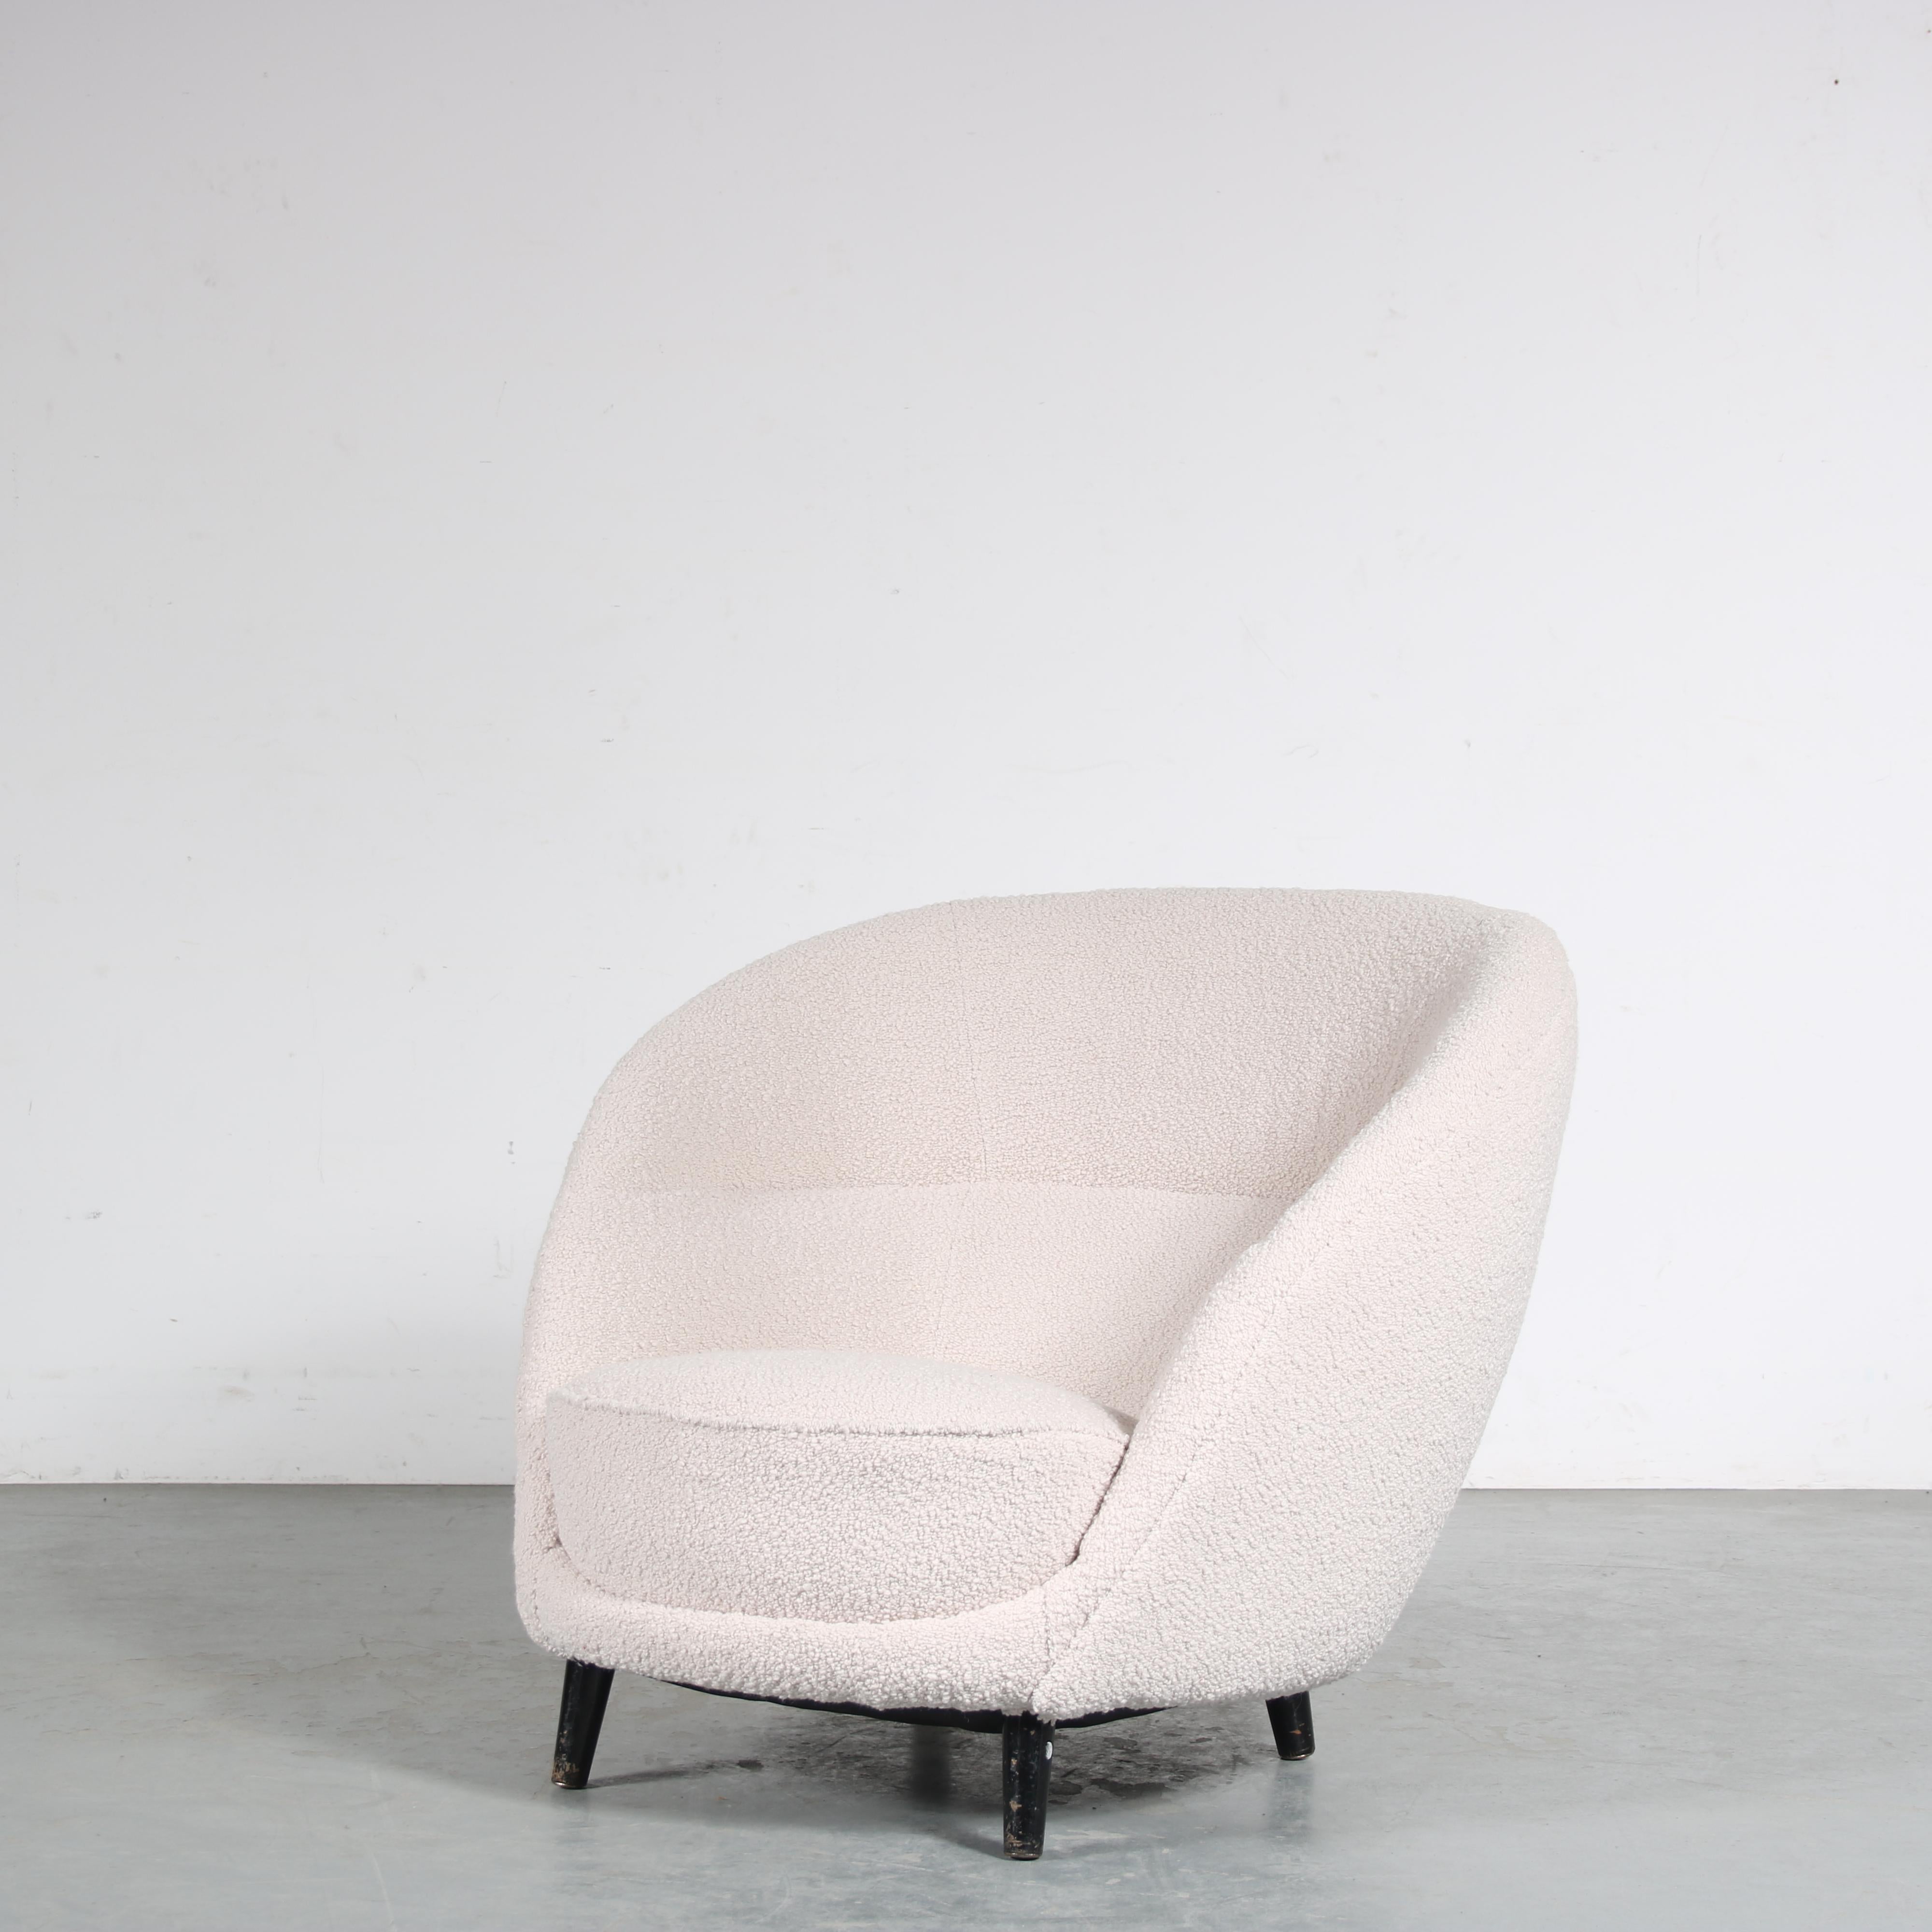 Ein wunderschöner Lounge-/Clubsessel im Stil von ISA Bergamo, hergestellt in Italien um 1960.

Dieser ansprechende Stuhl hat eine sehr bequeme, tiefe Sitzfläche, die ihm den einladenden Club-Stil und eine beeindruckende Ausstrahlung verleiht. Er